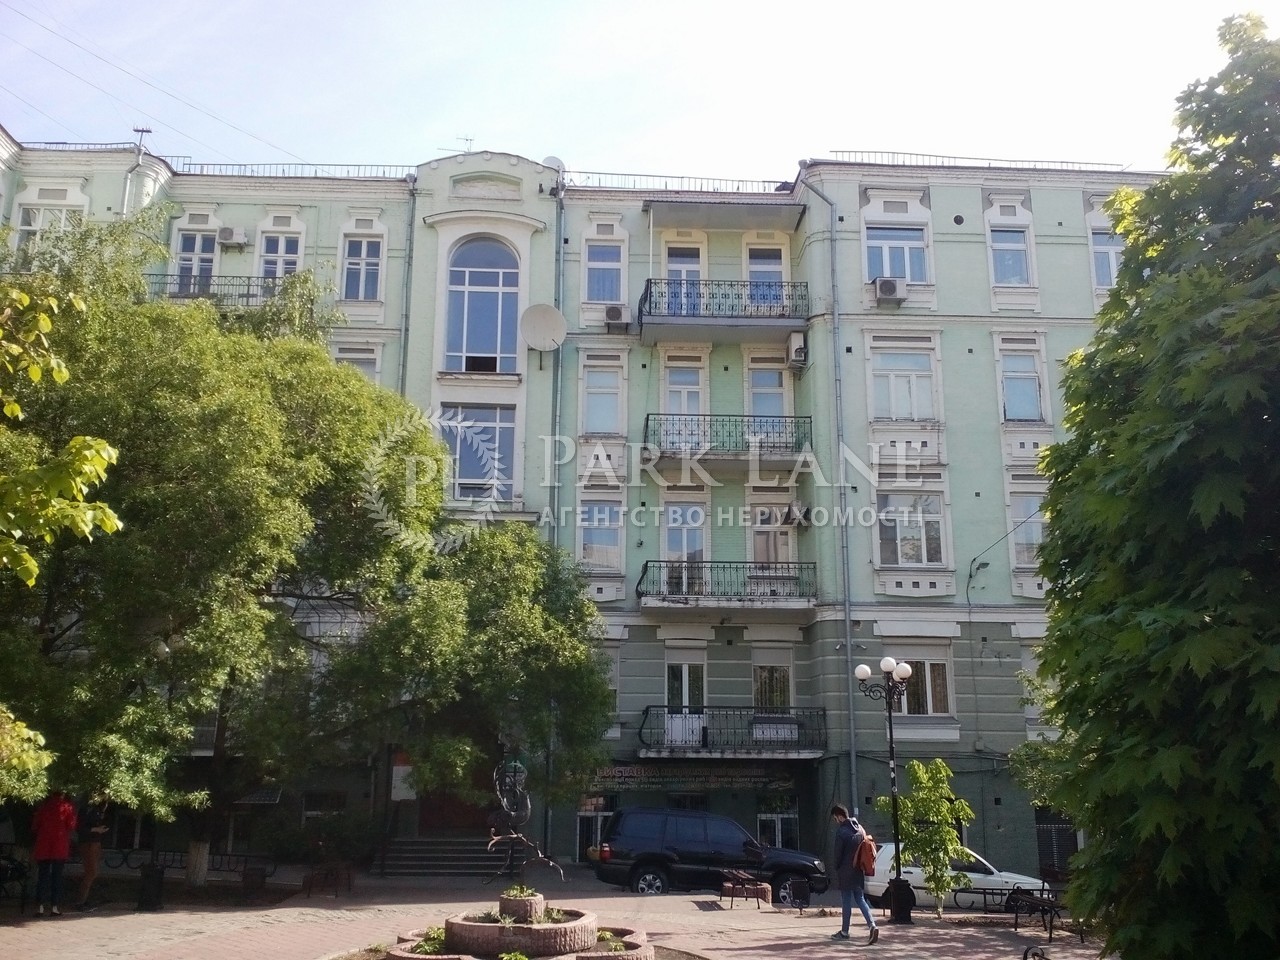  Нежилое помещение, ул. Рогнединская, Киев, R-14682 - Фото 6